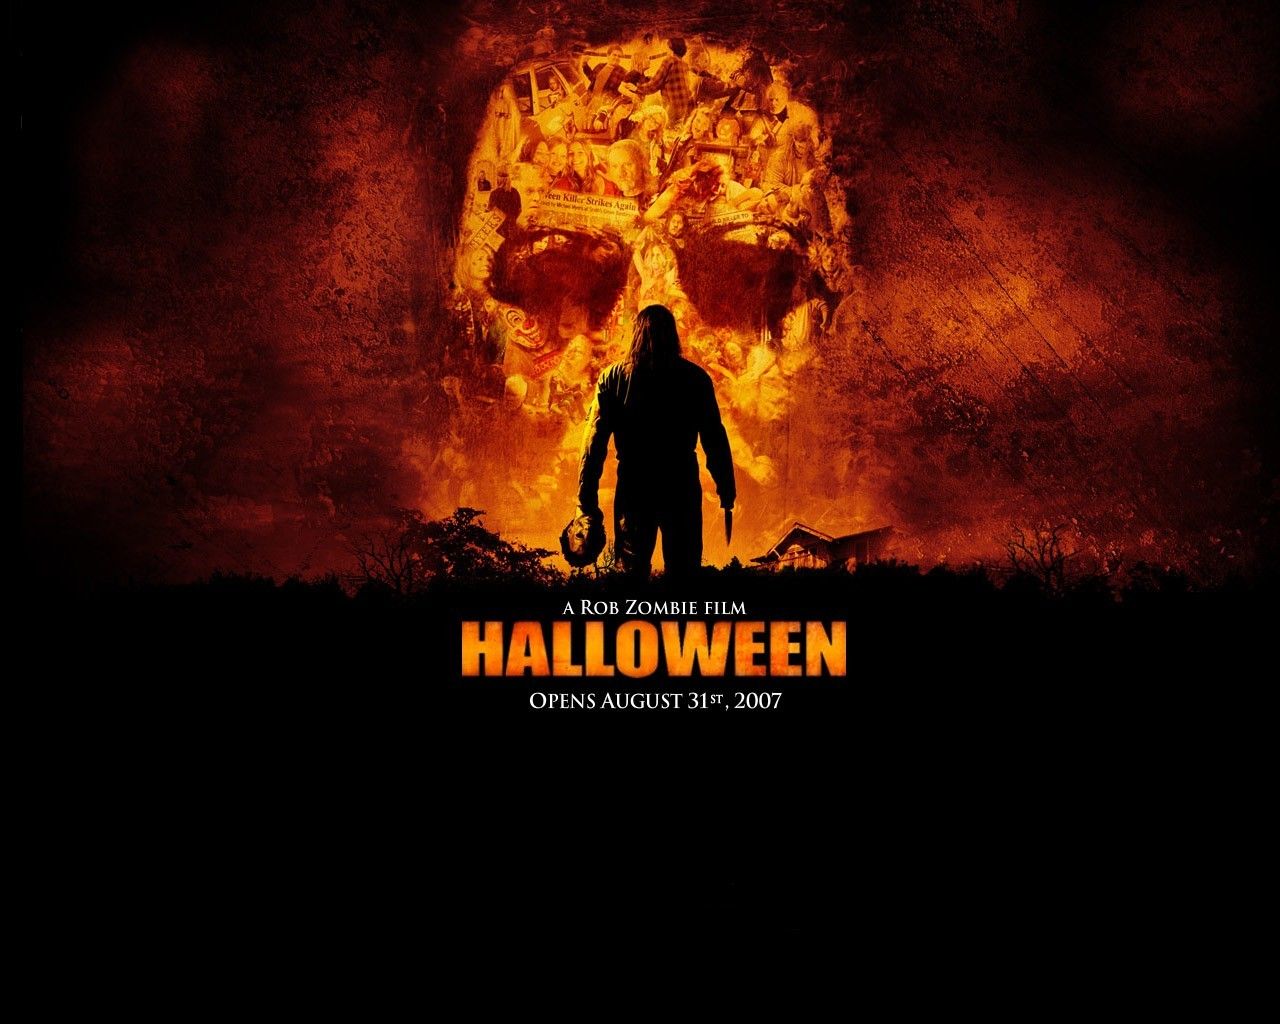 Desktop Wallpapers - Halloween - Movie Free Desktop Backgrounds